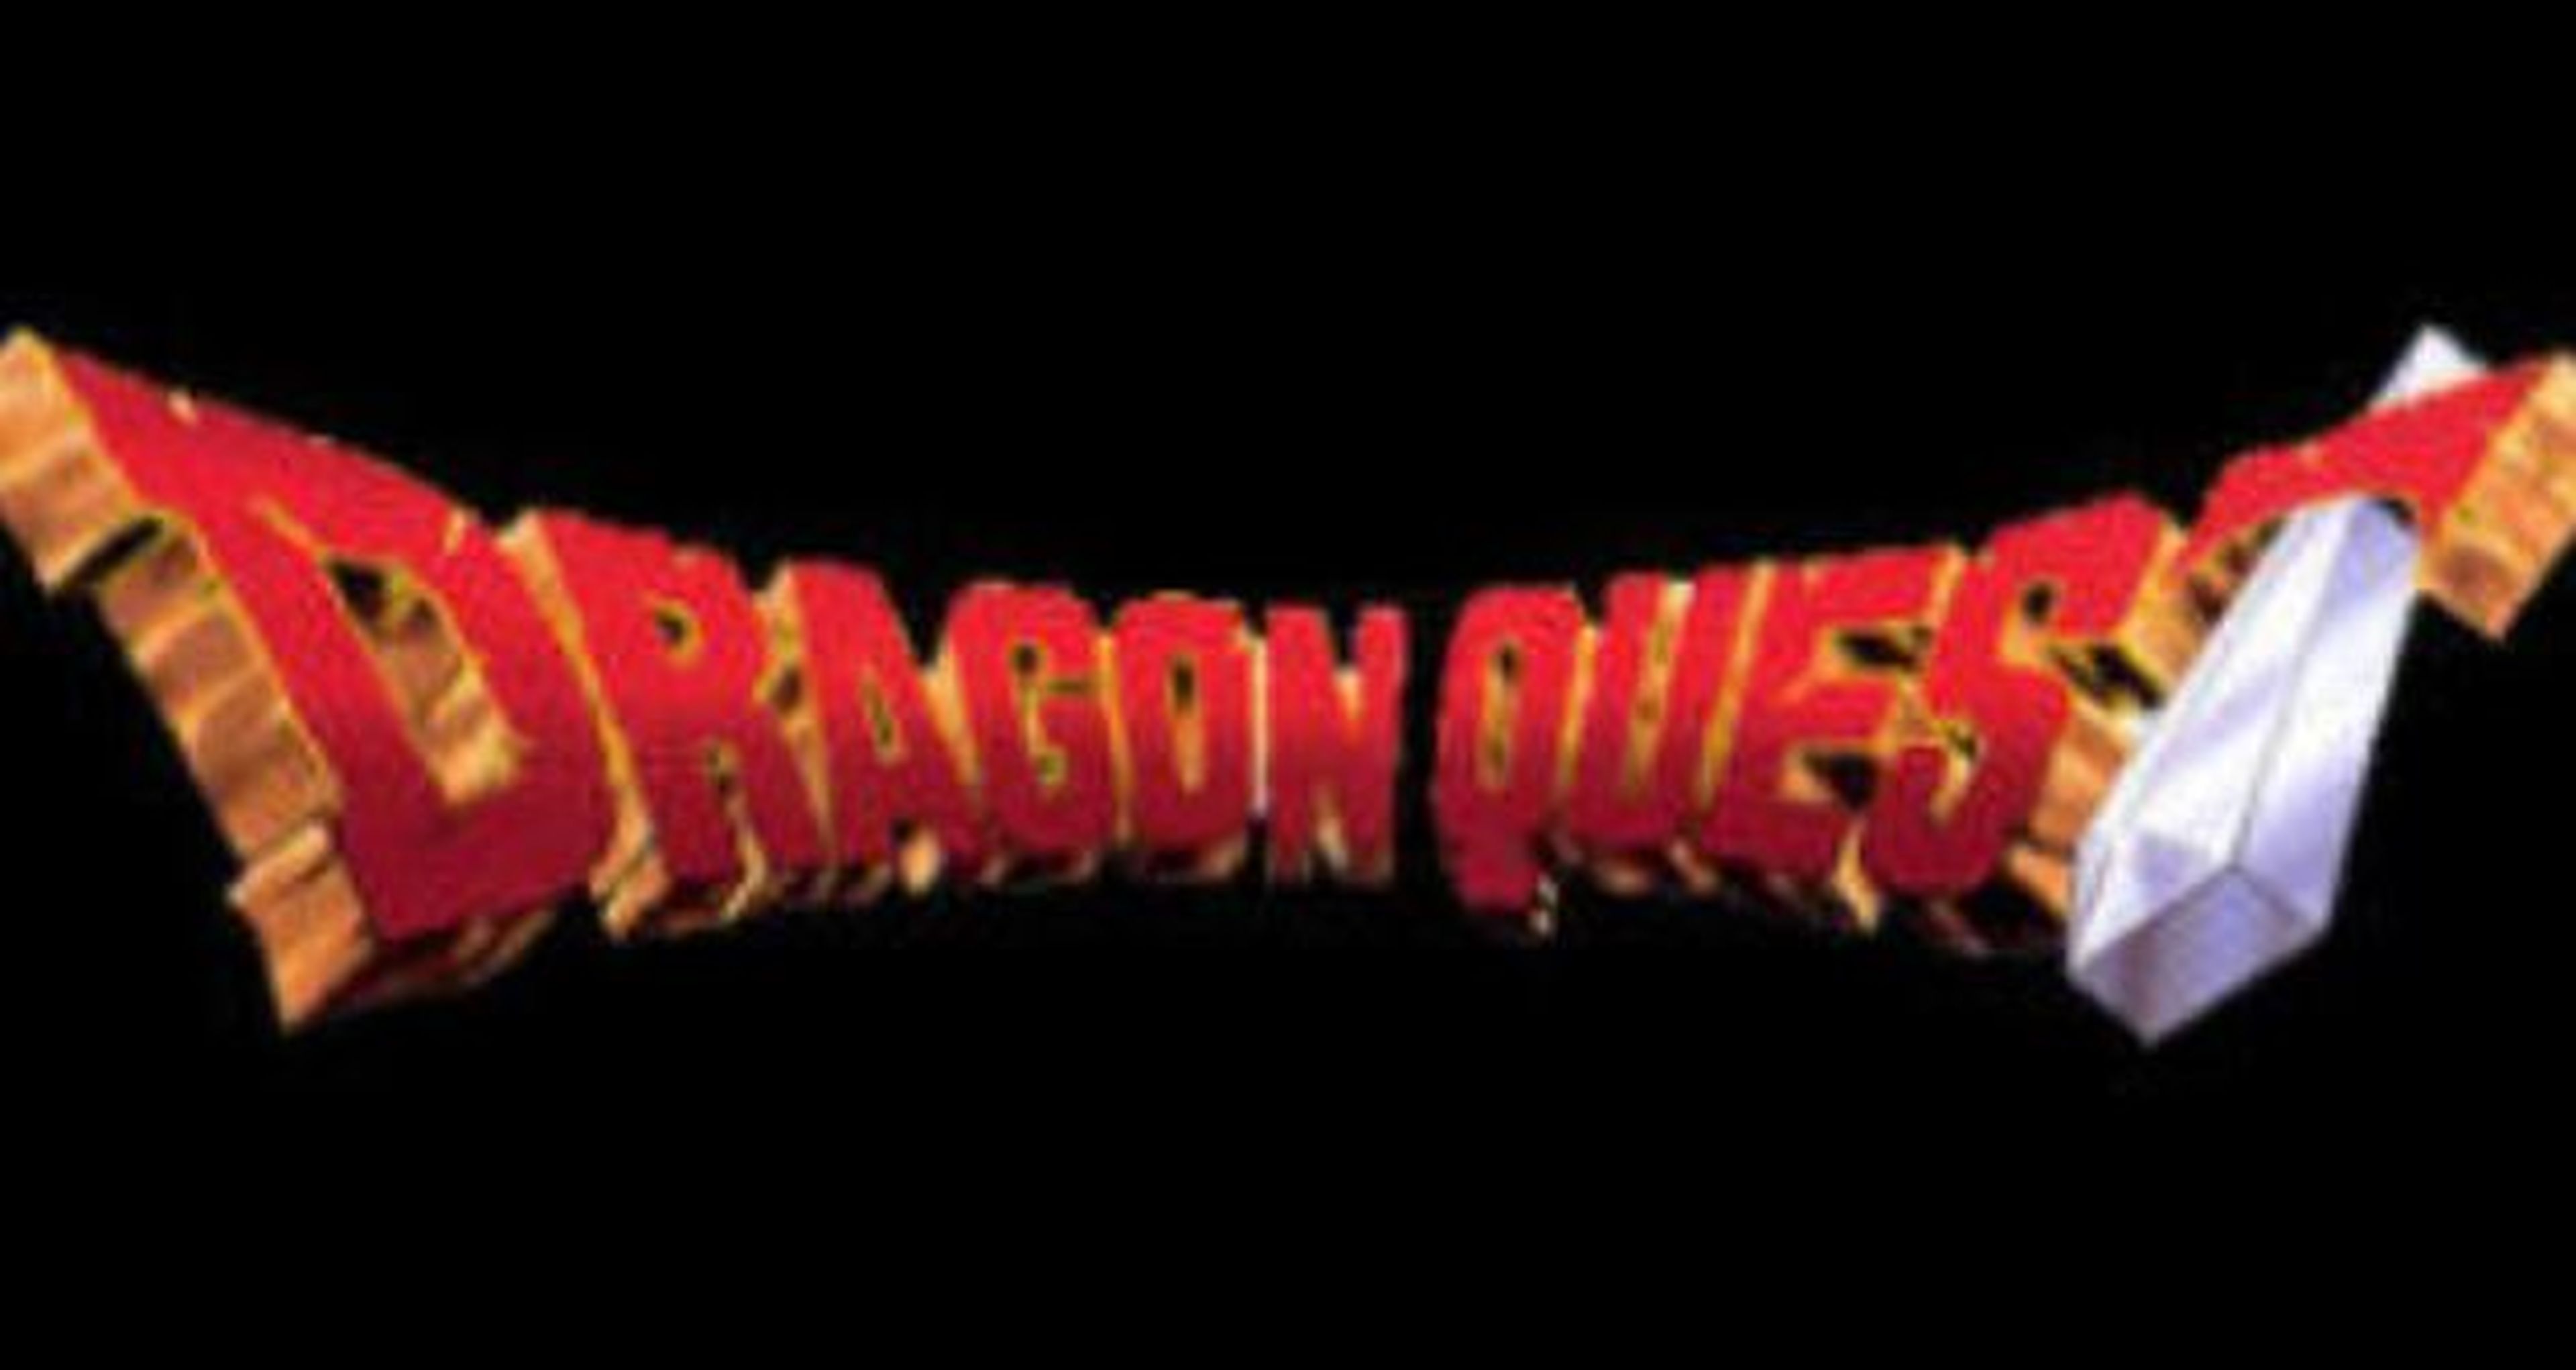 Square Enix registra posibles marcas para Dragon Quest